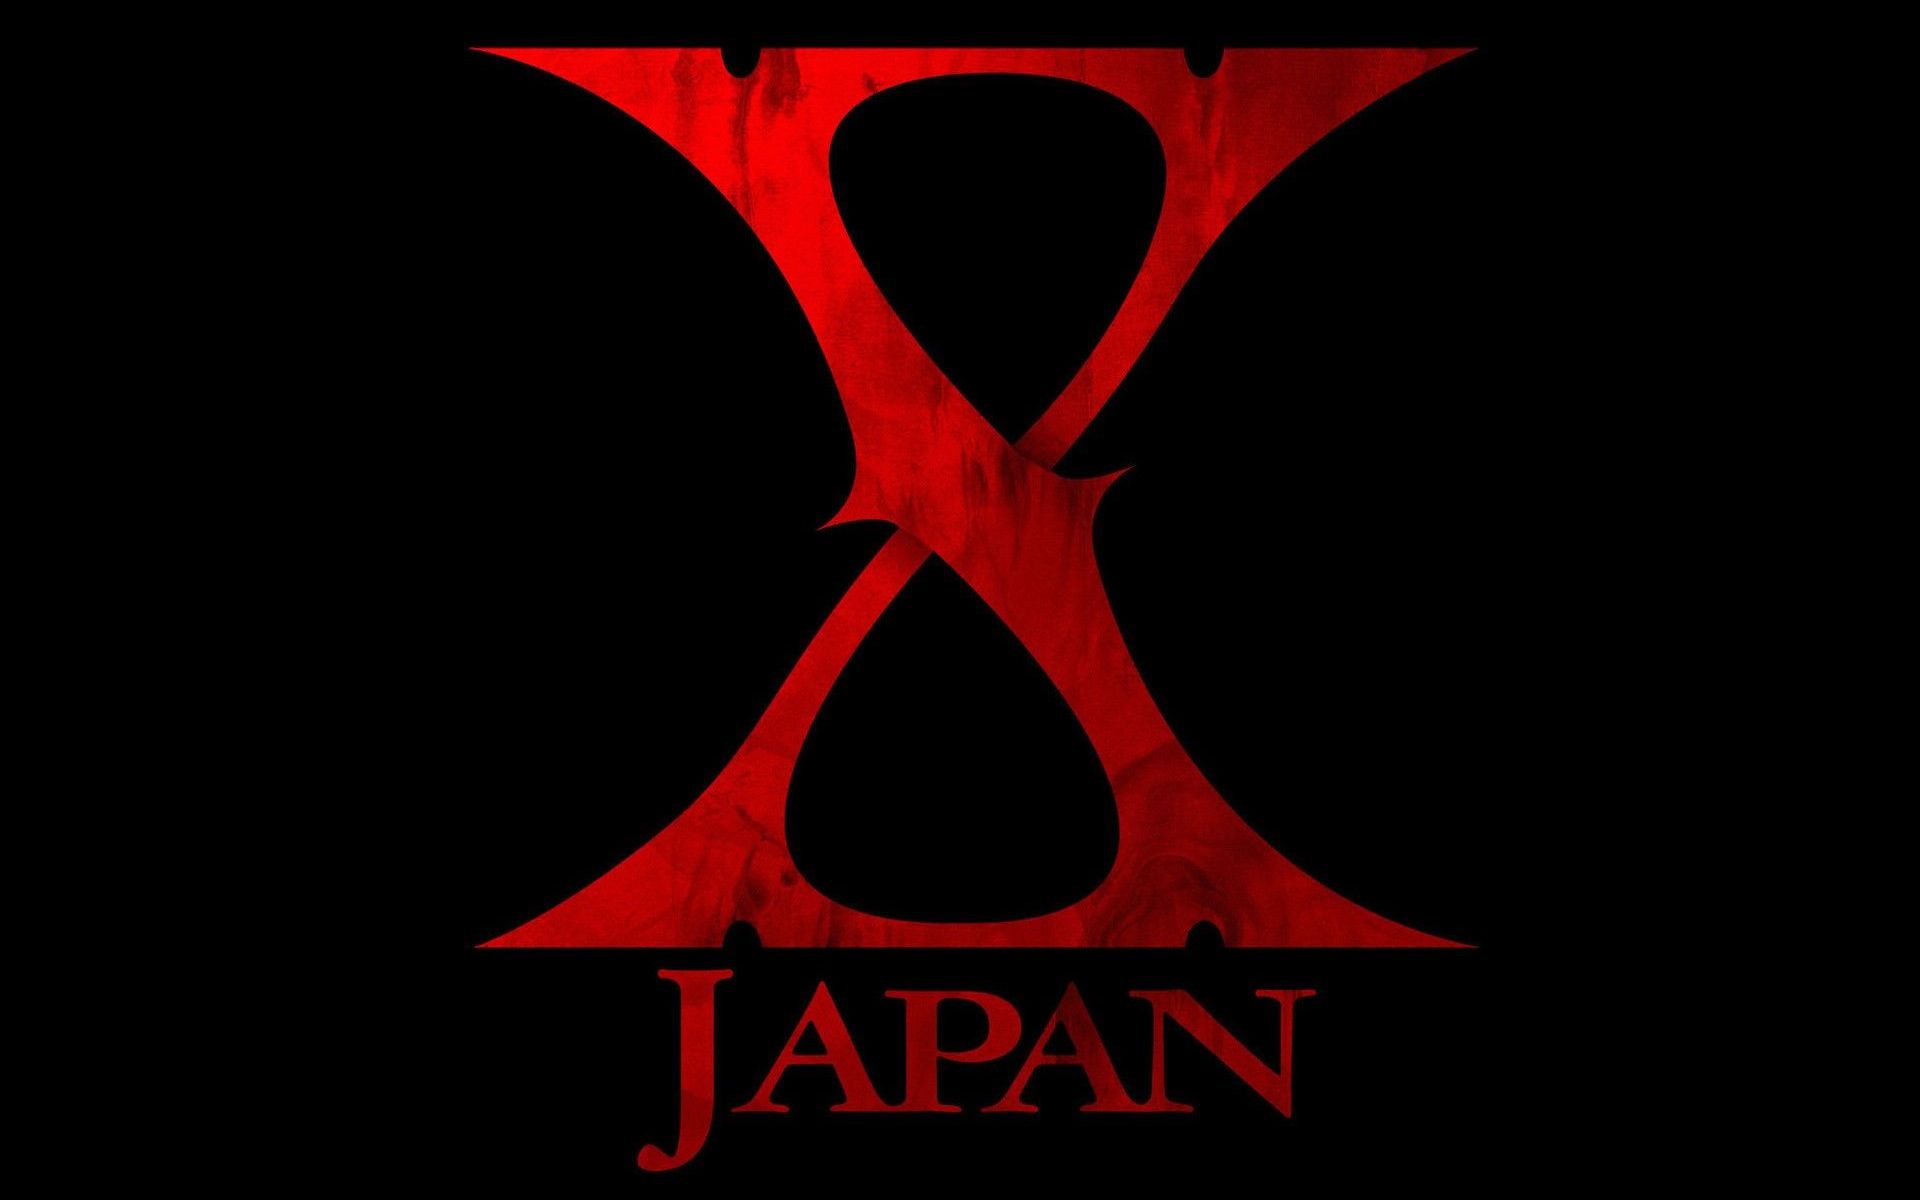 【蓝光】X Japan - 已成传说的「The Last Live」完全版 1997.12.31_哔哩哔哩_bilibili